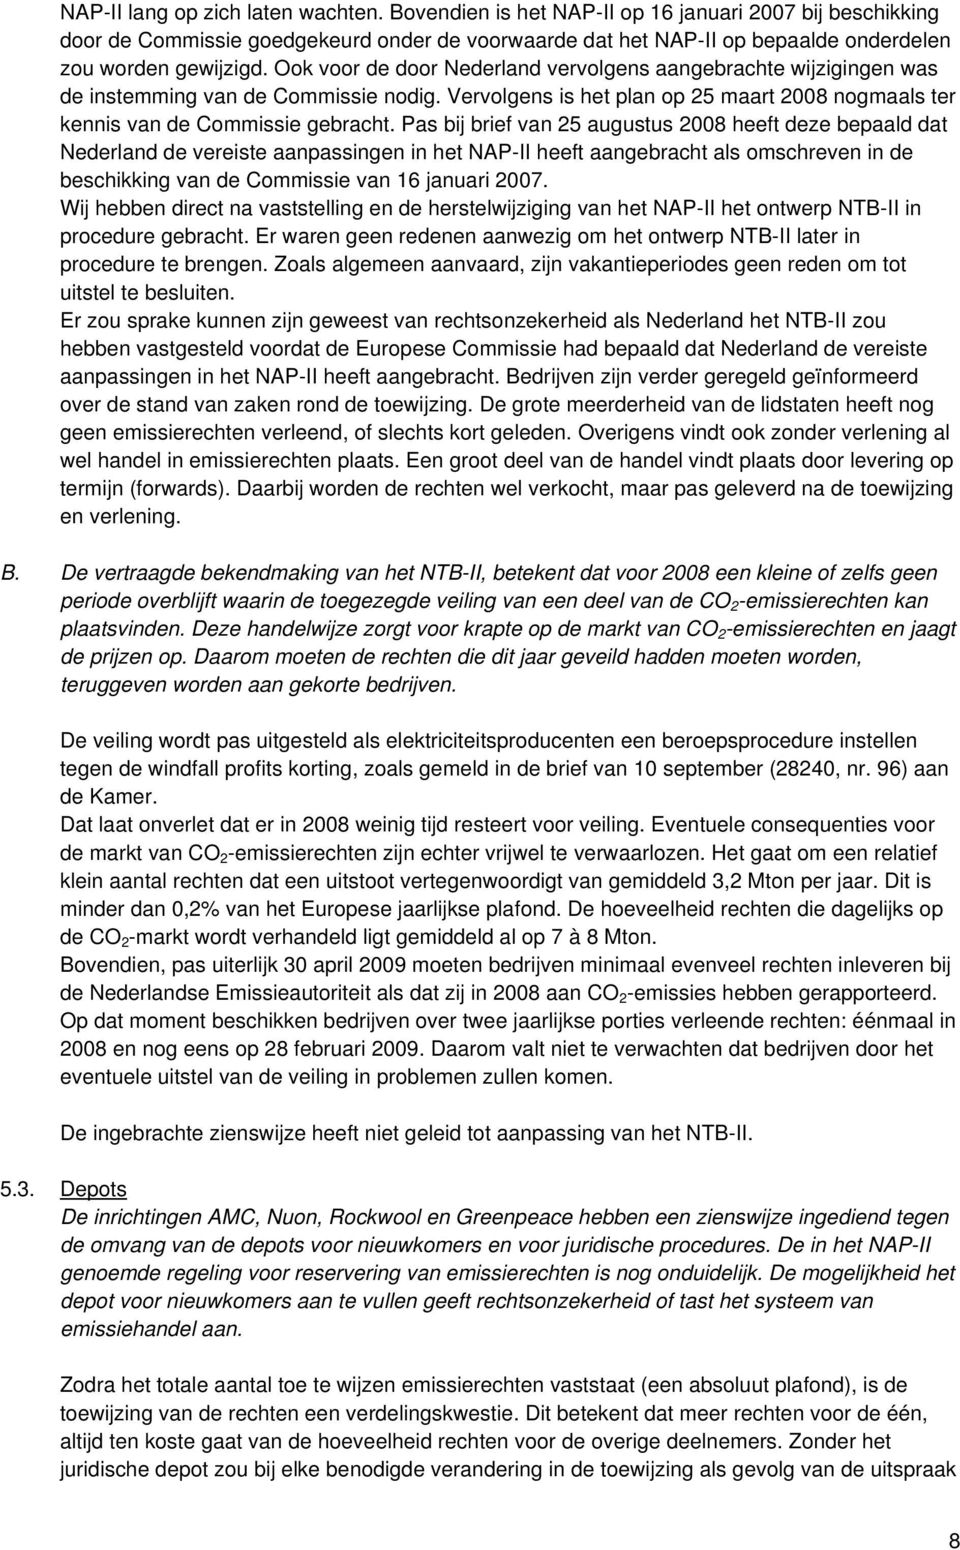 Ook voor de door Nederland vervolgens aangebrachte wijzigingen was de instemming van de Commissie nodig. Vervolgens is het plan op 25 maart 2008 nogmaals ter kennis van de Commissie gebracht.